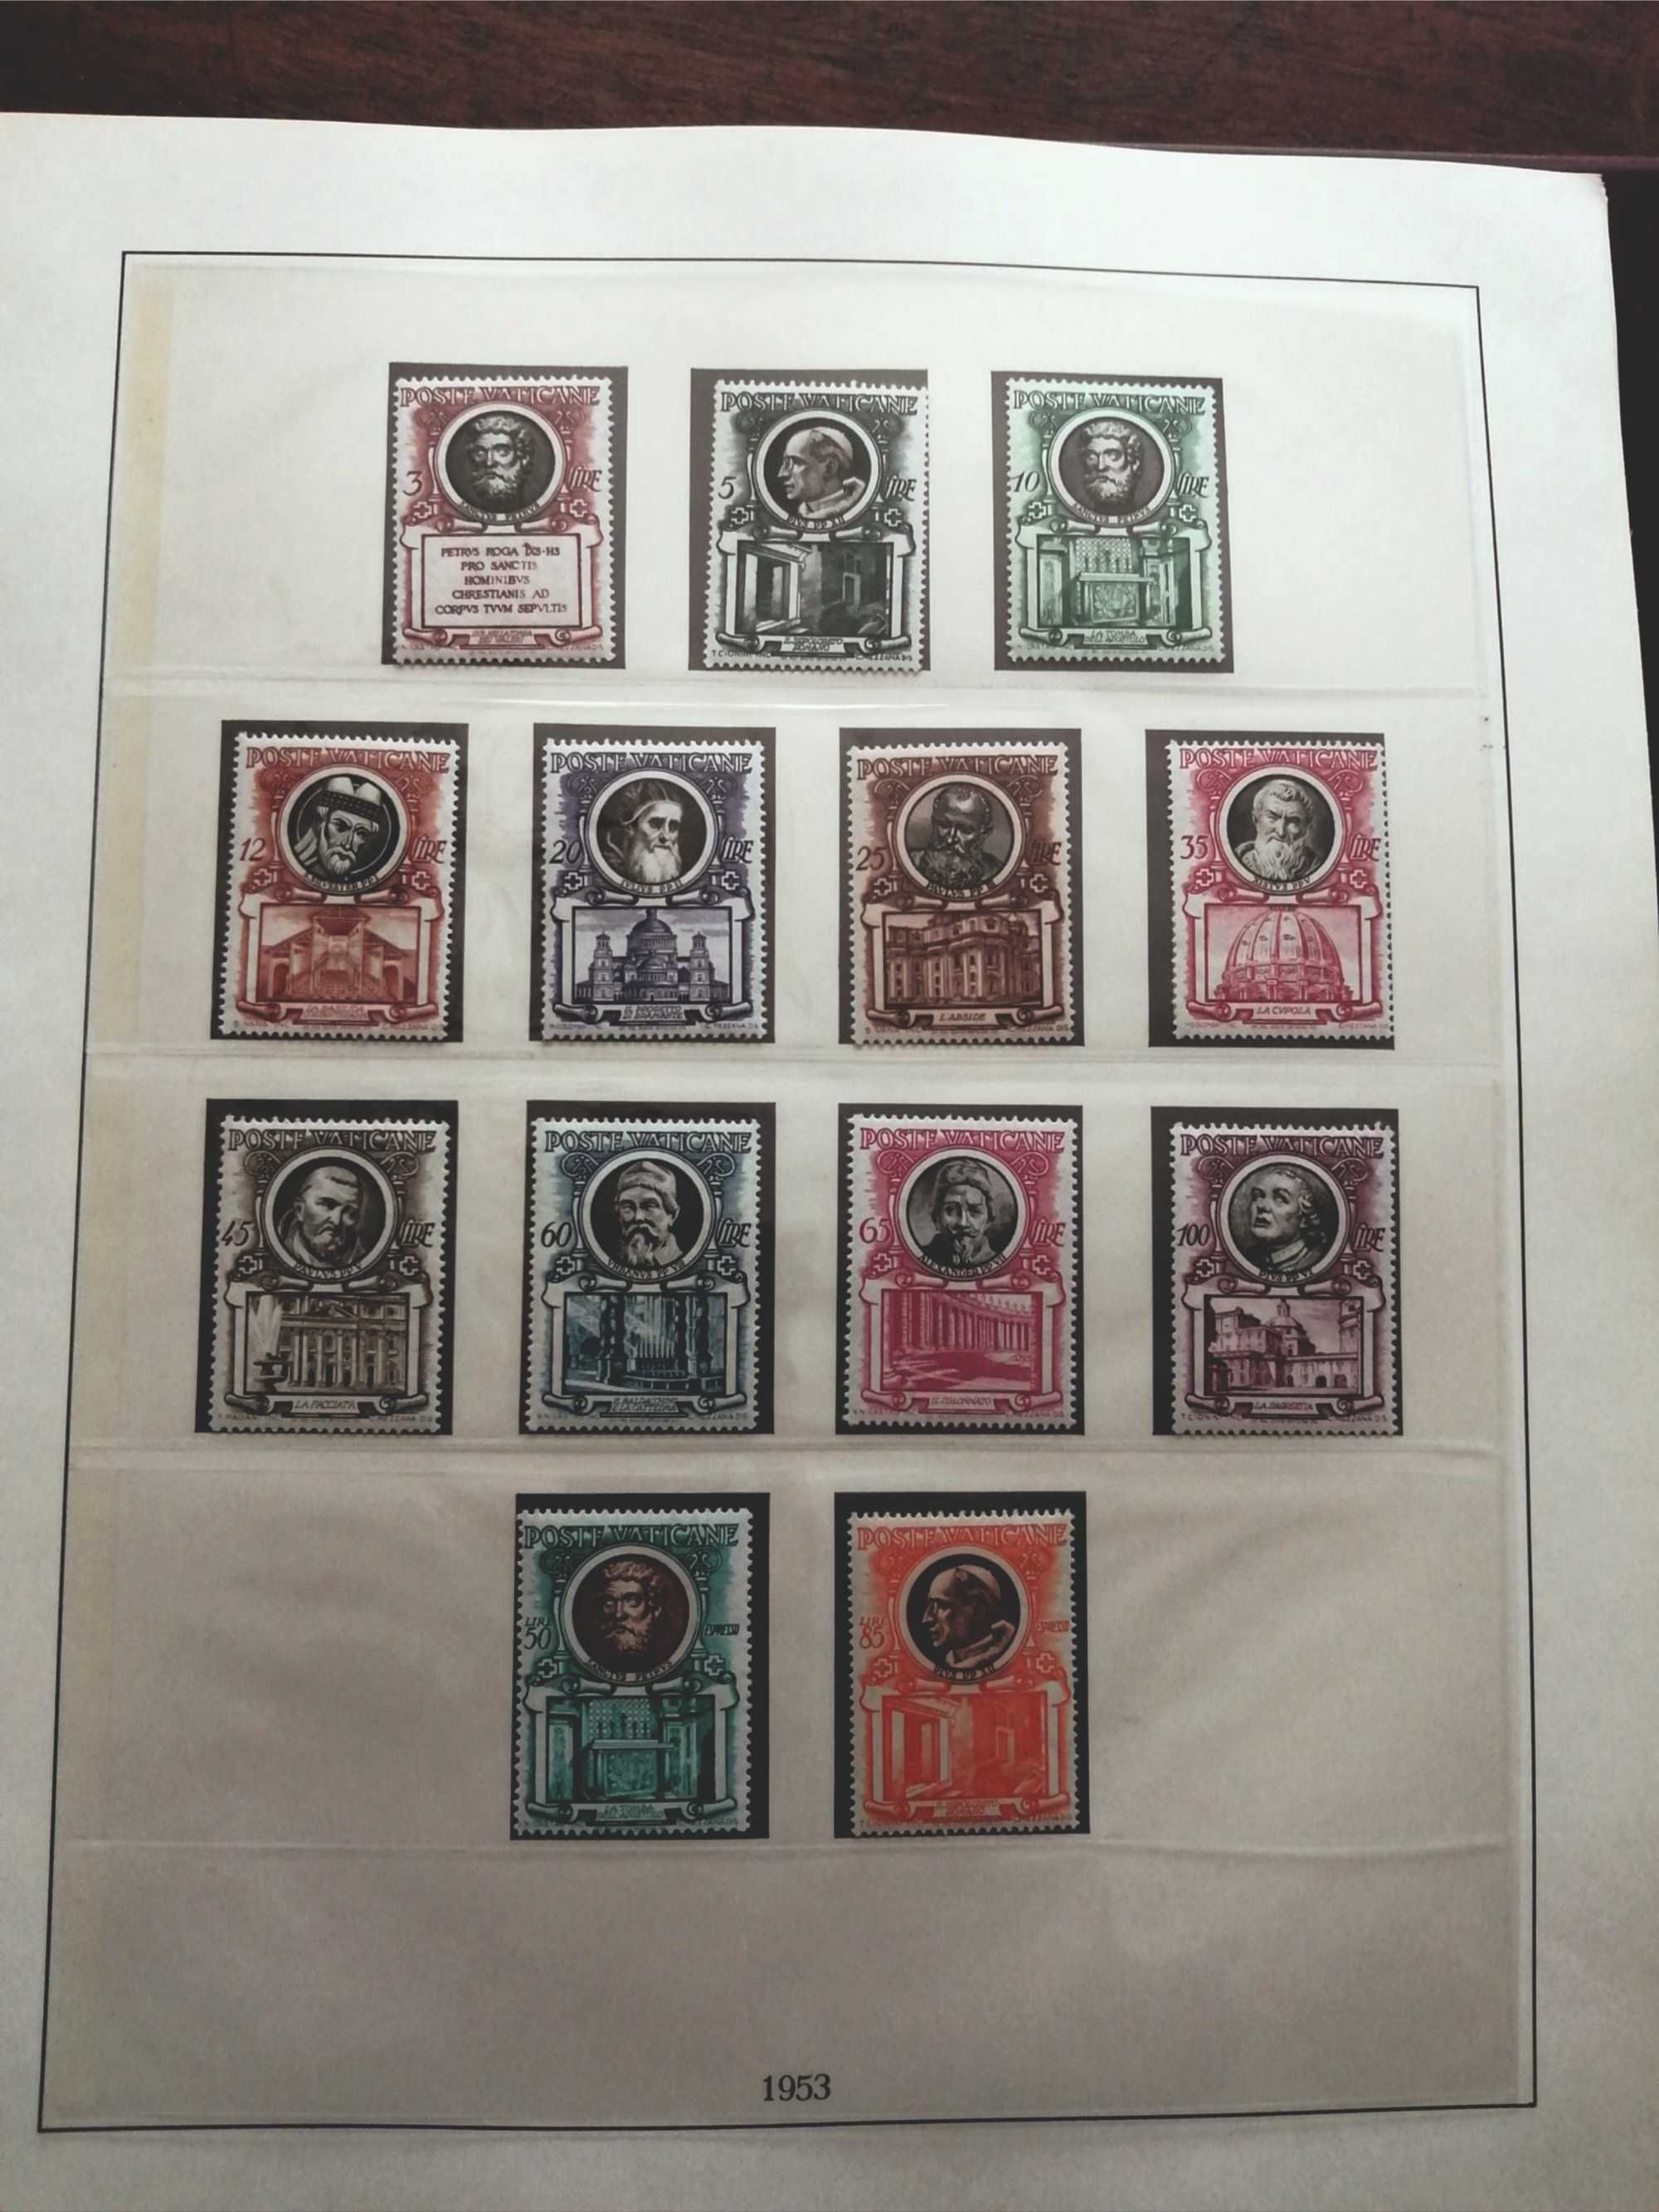 albuns selos com historia